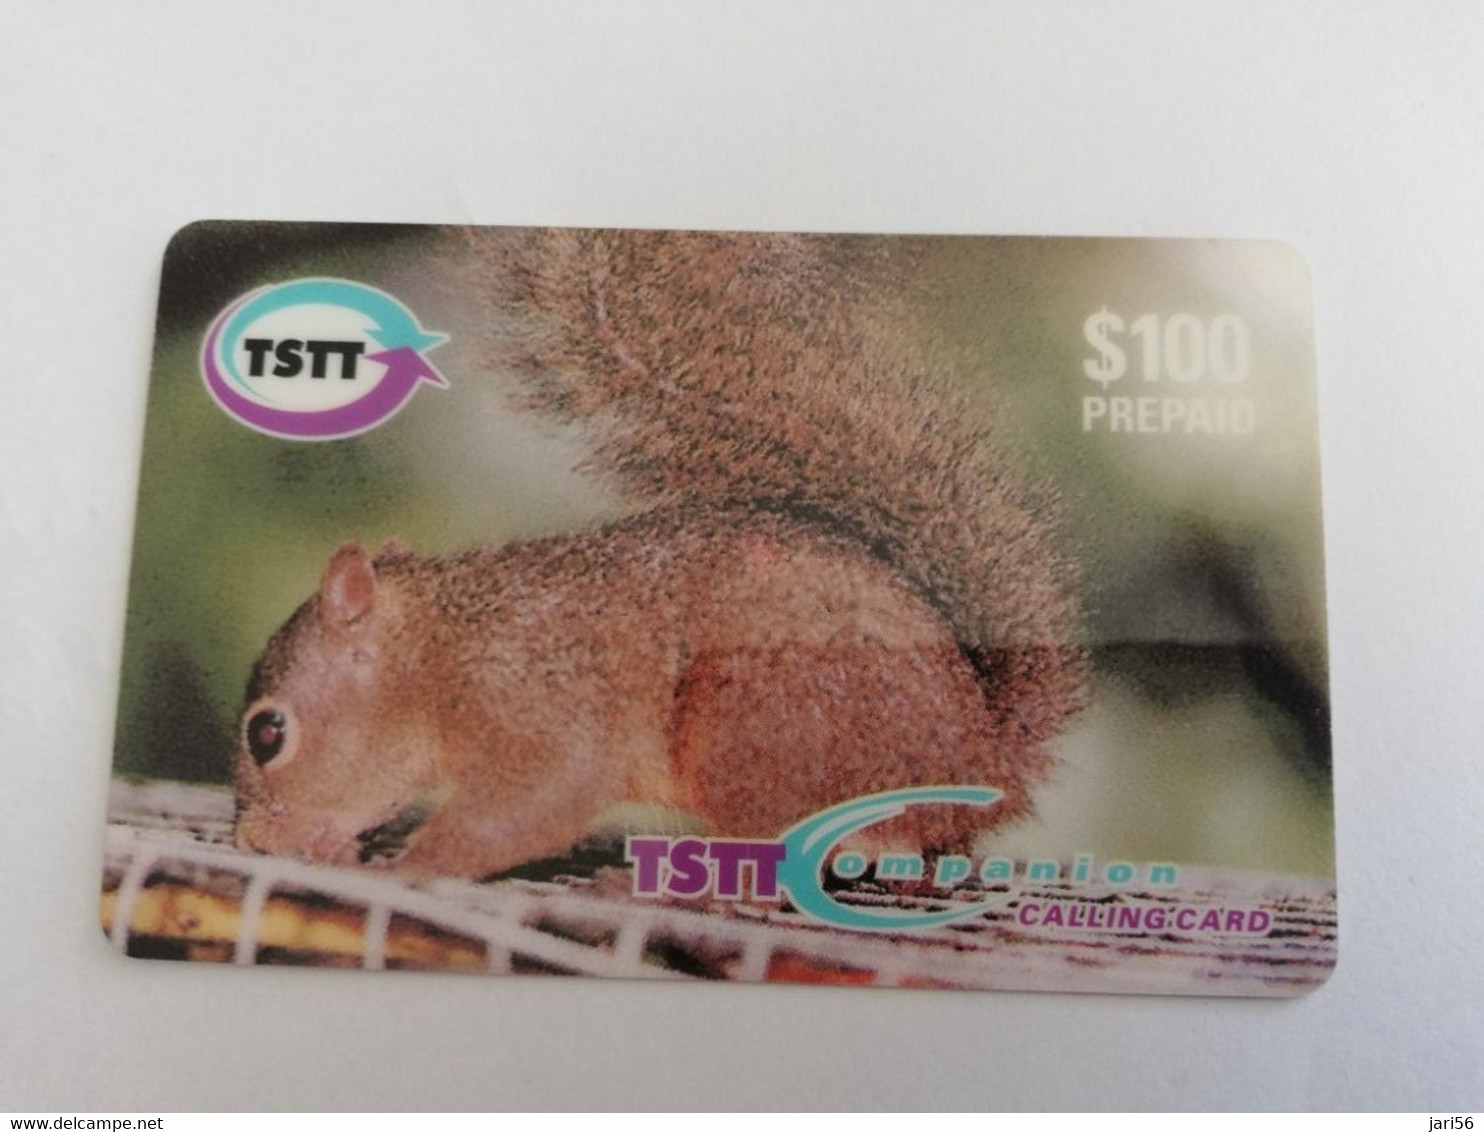 TRINIDAD & TOBAGO    $100,-  SERIESF/001 TSTT  HUNGRY LITTLE SQUIRREL    ** 9552** - Trinidad & Tobago